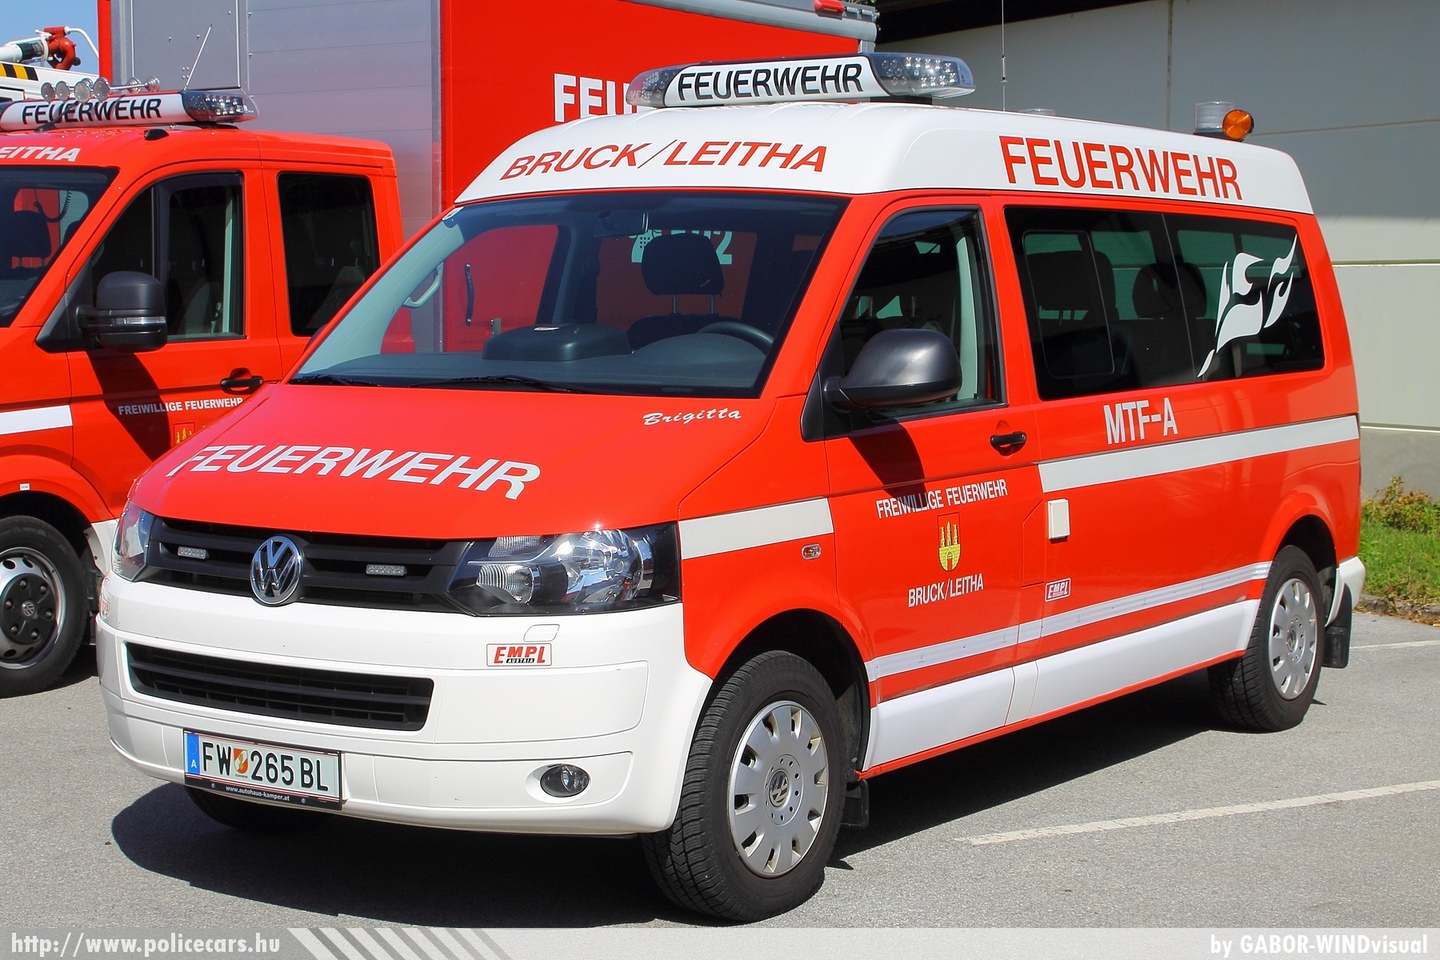 Volkswagen Transporter T5 MTF-A, Freiwillige Feuerwher Bruck/Leitha, fotó: GABOR-WINDvisual
Keywords: osztrák Ausztria tûzoltó tûzoltóautó tûzoltóság fire firetruck Austria